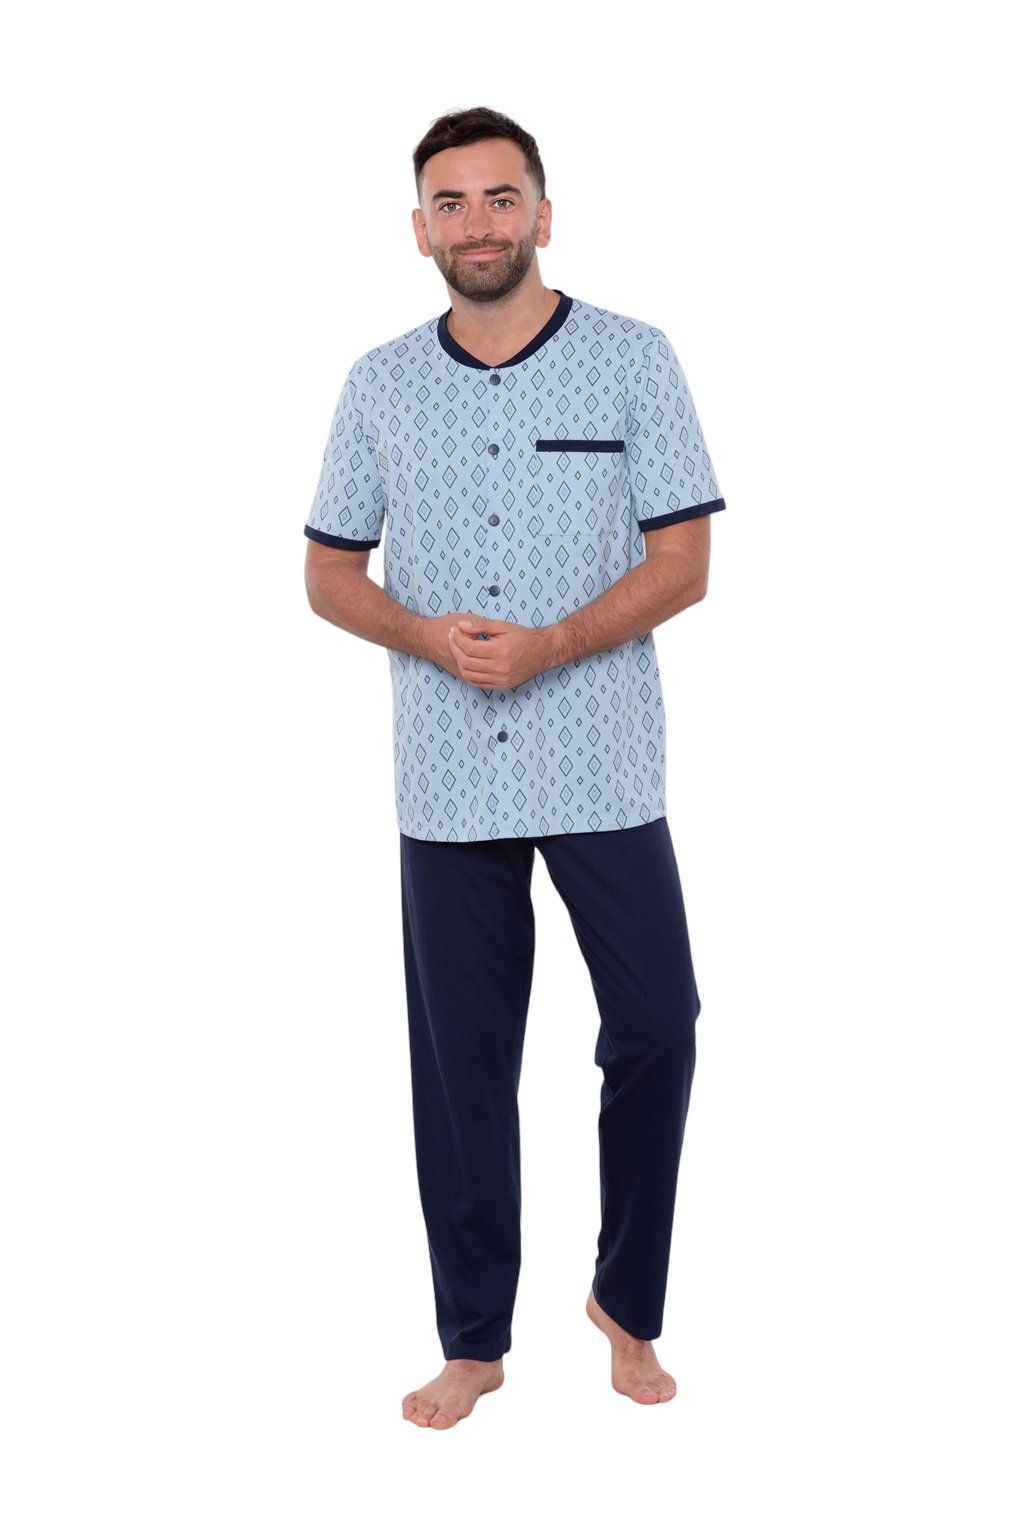 Pánské pyžamo s krátkým rukávem a dlouhými nohavicemi, 204122 477, modrá Wadima